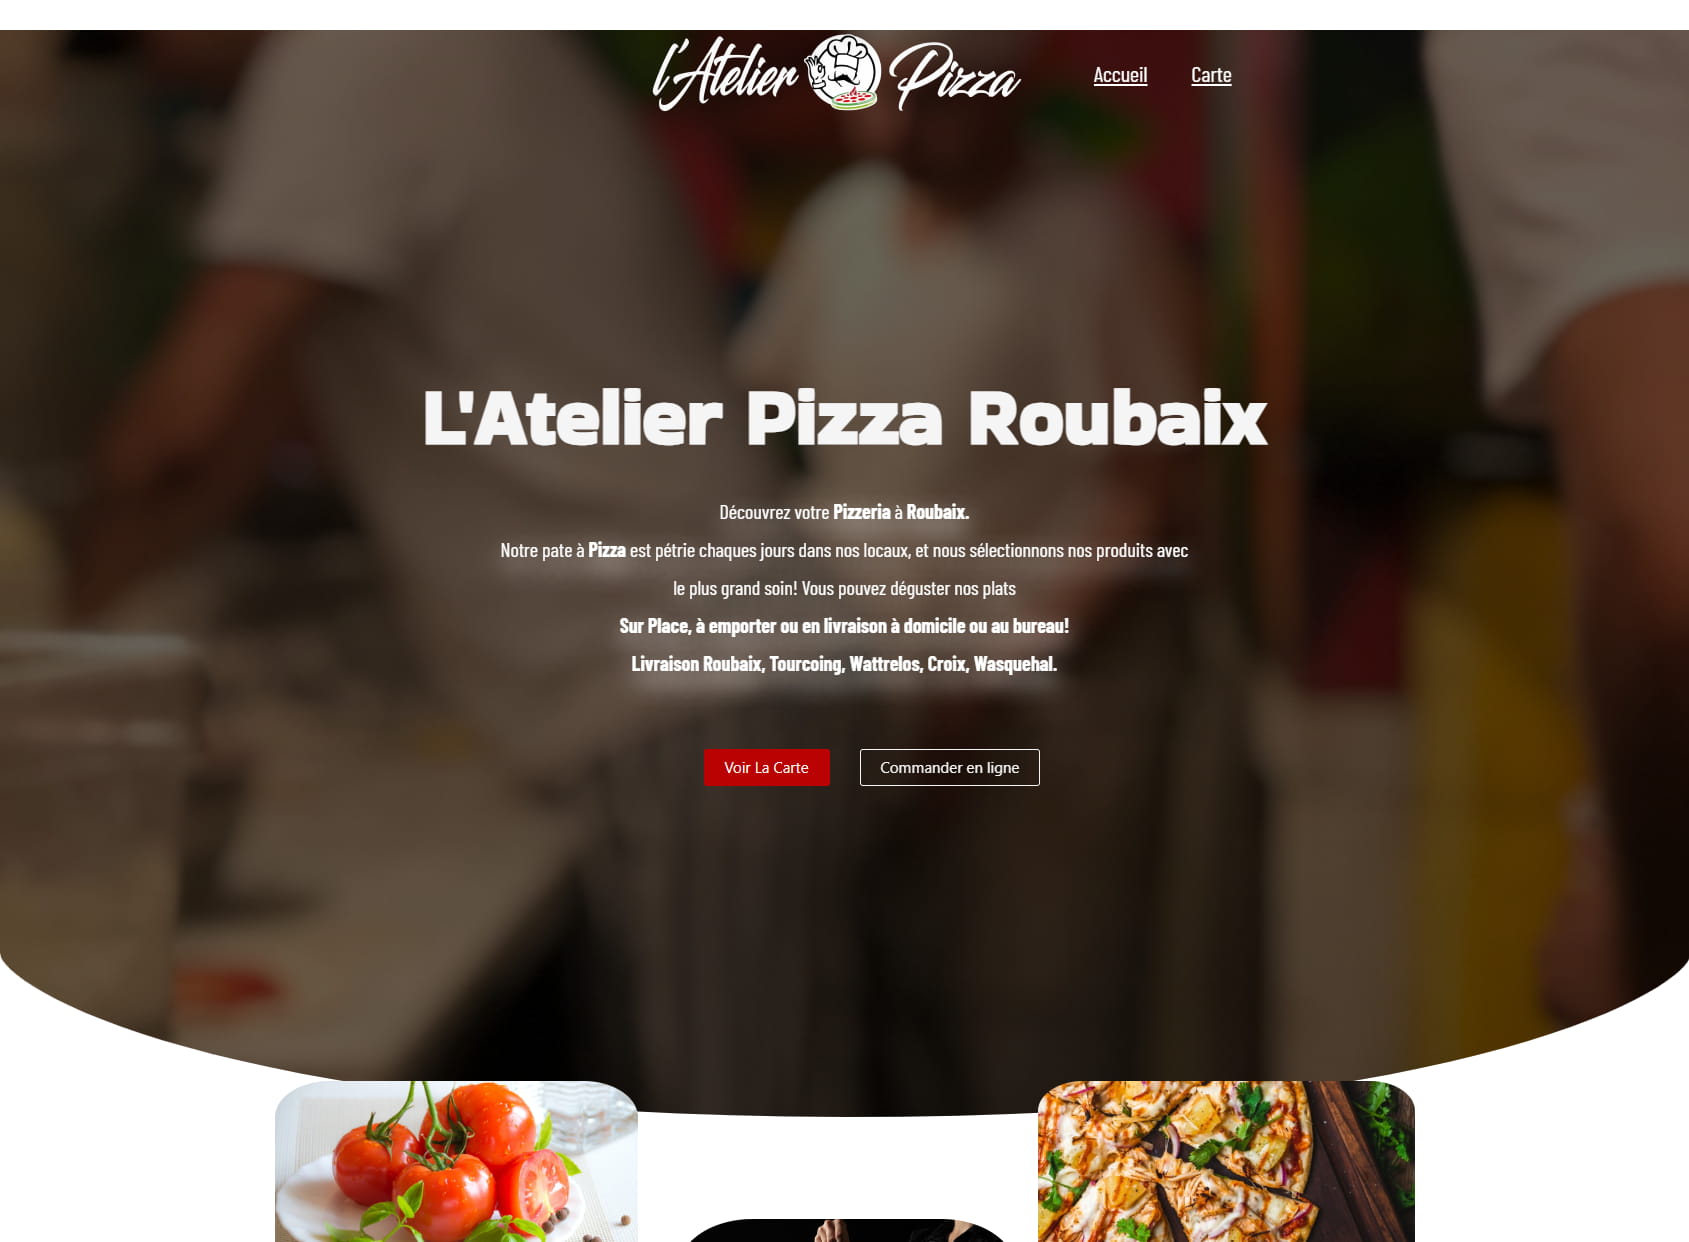 L'Atelier Pizza Roubaix